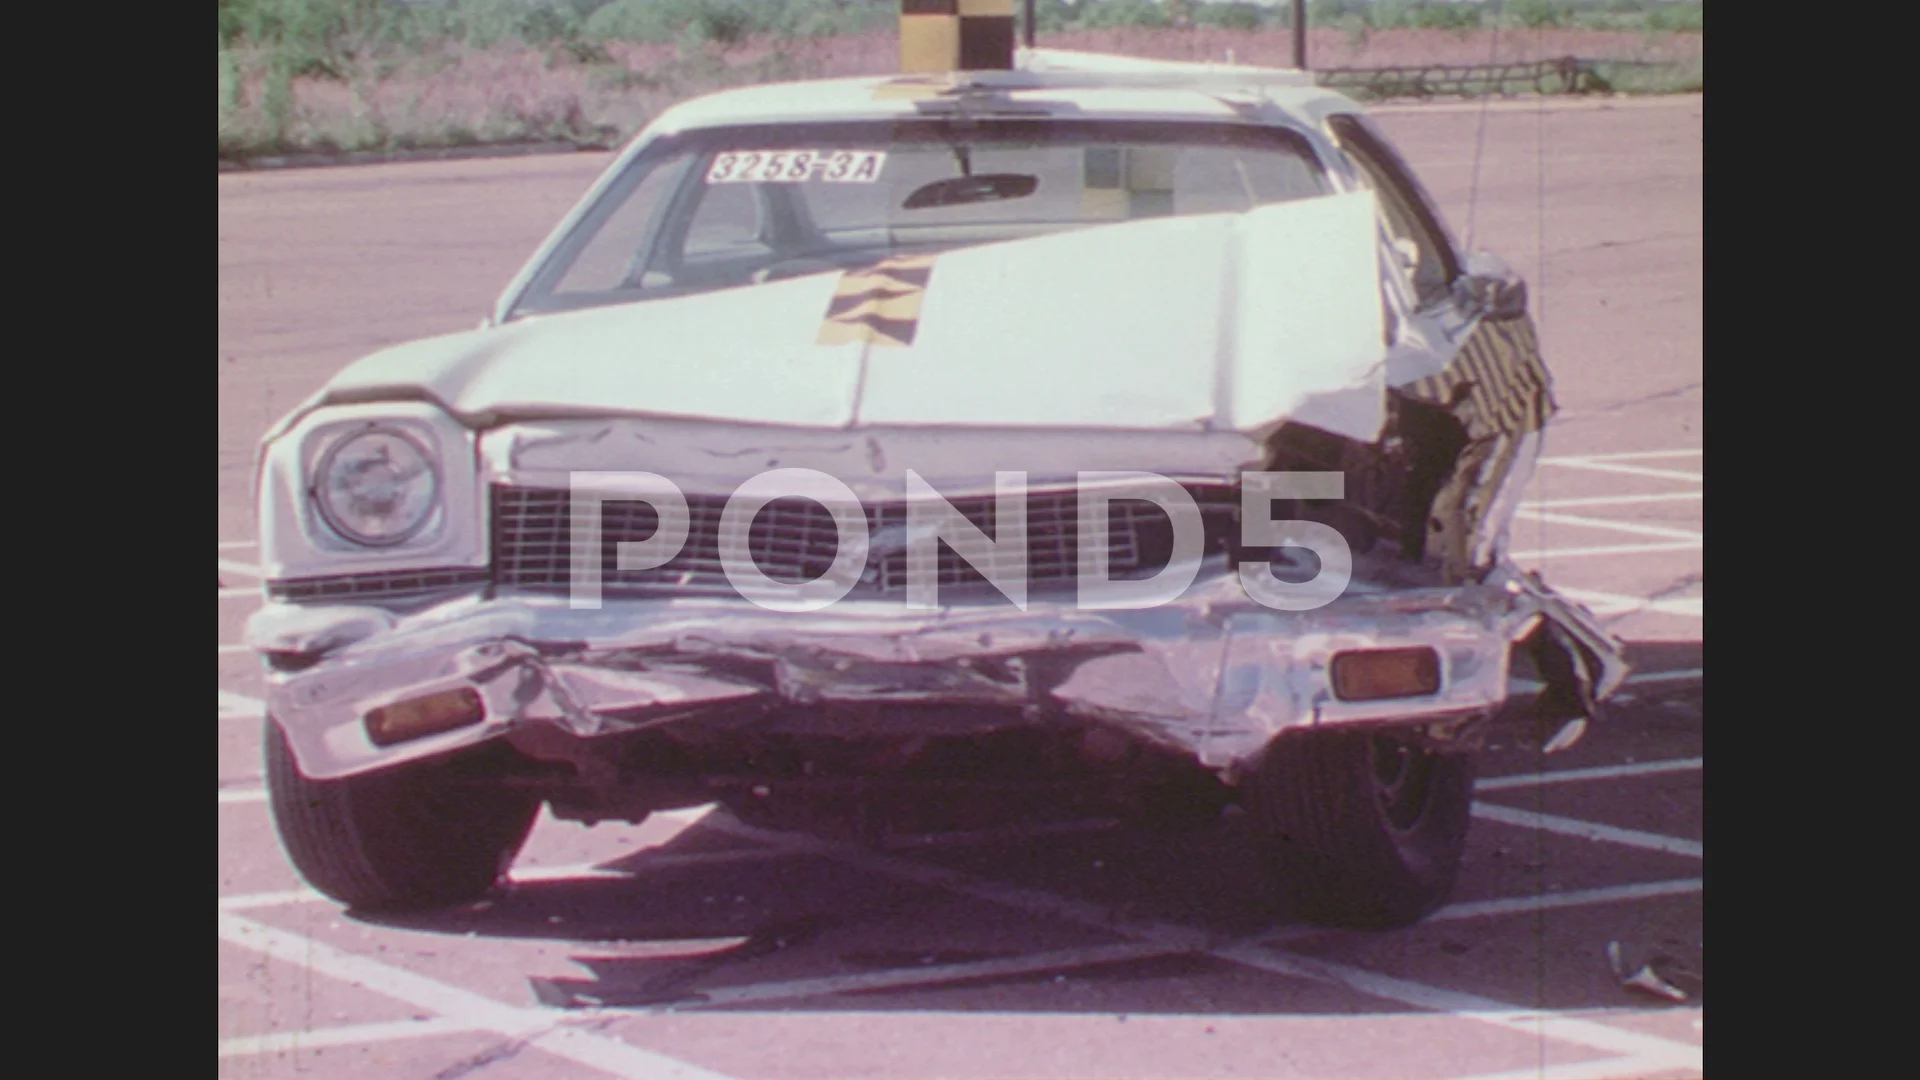 Watch Big 1970s Cars Decimate Their Smaller Siblings in Vintage Crash Test  Footage